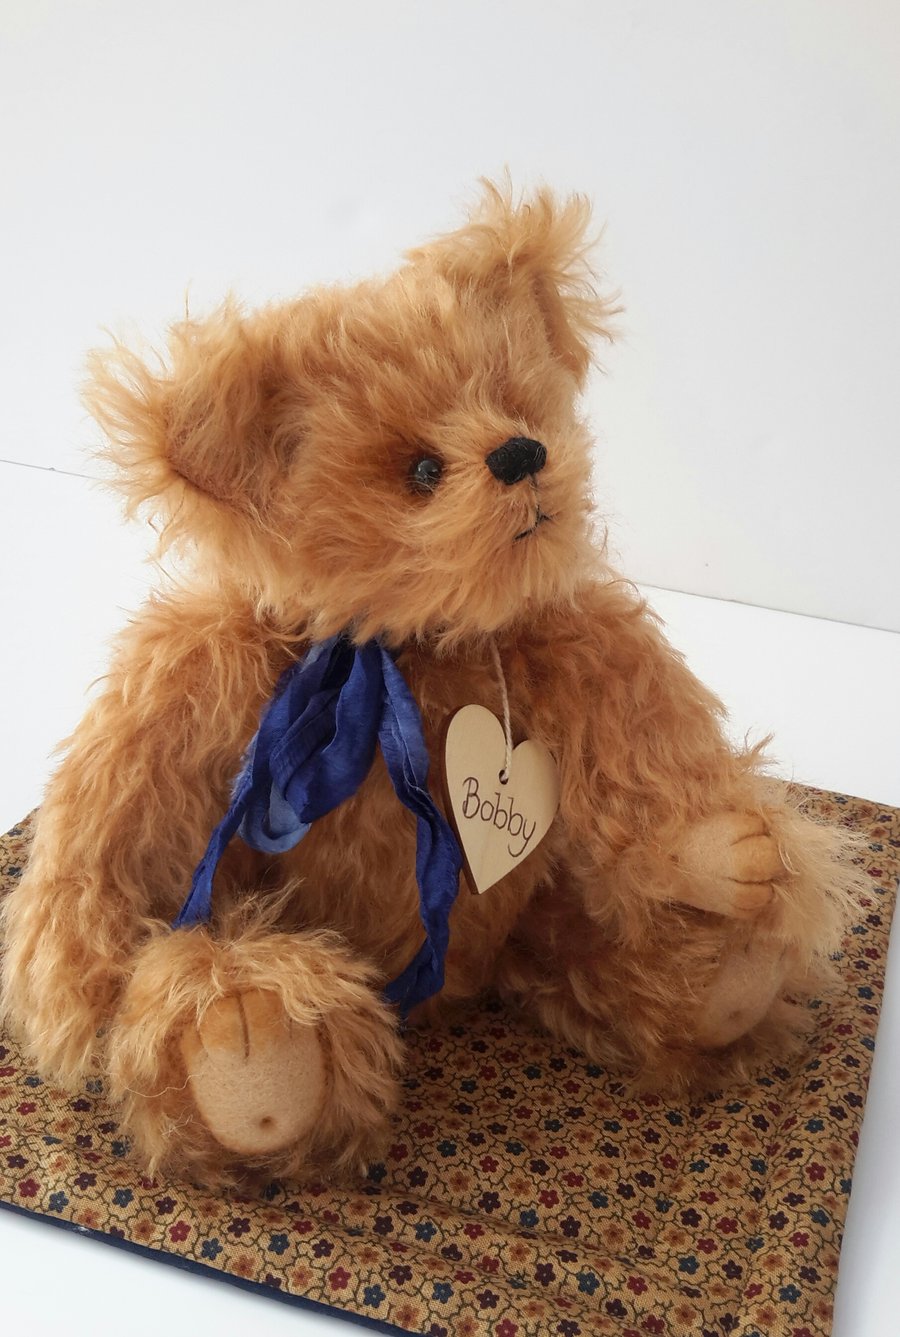 SOLD Bobby Bear,One of a Kind Mohair Bear, Collectable Teddy Bear by Bearlescent